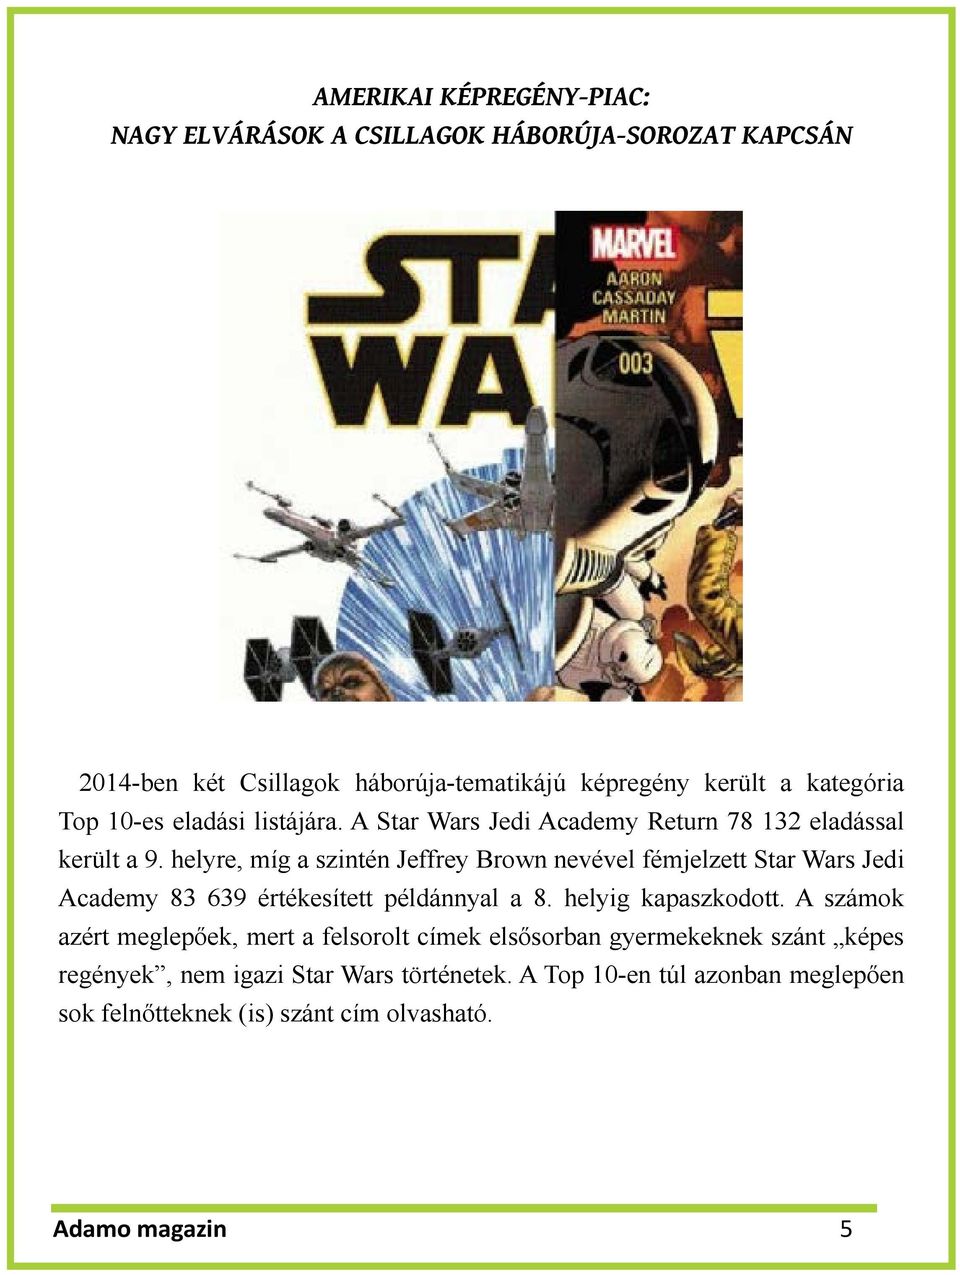 helyre, míg a szintén Jeffrey Brown nevével fémjelzett Star Wars Jedi Academy 83 639 értékesített példánnyal a 8. helyig kapaszkodott.